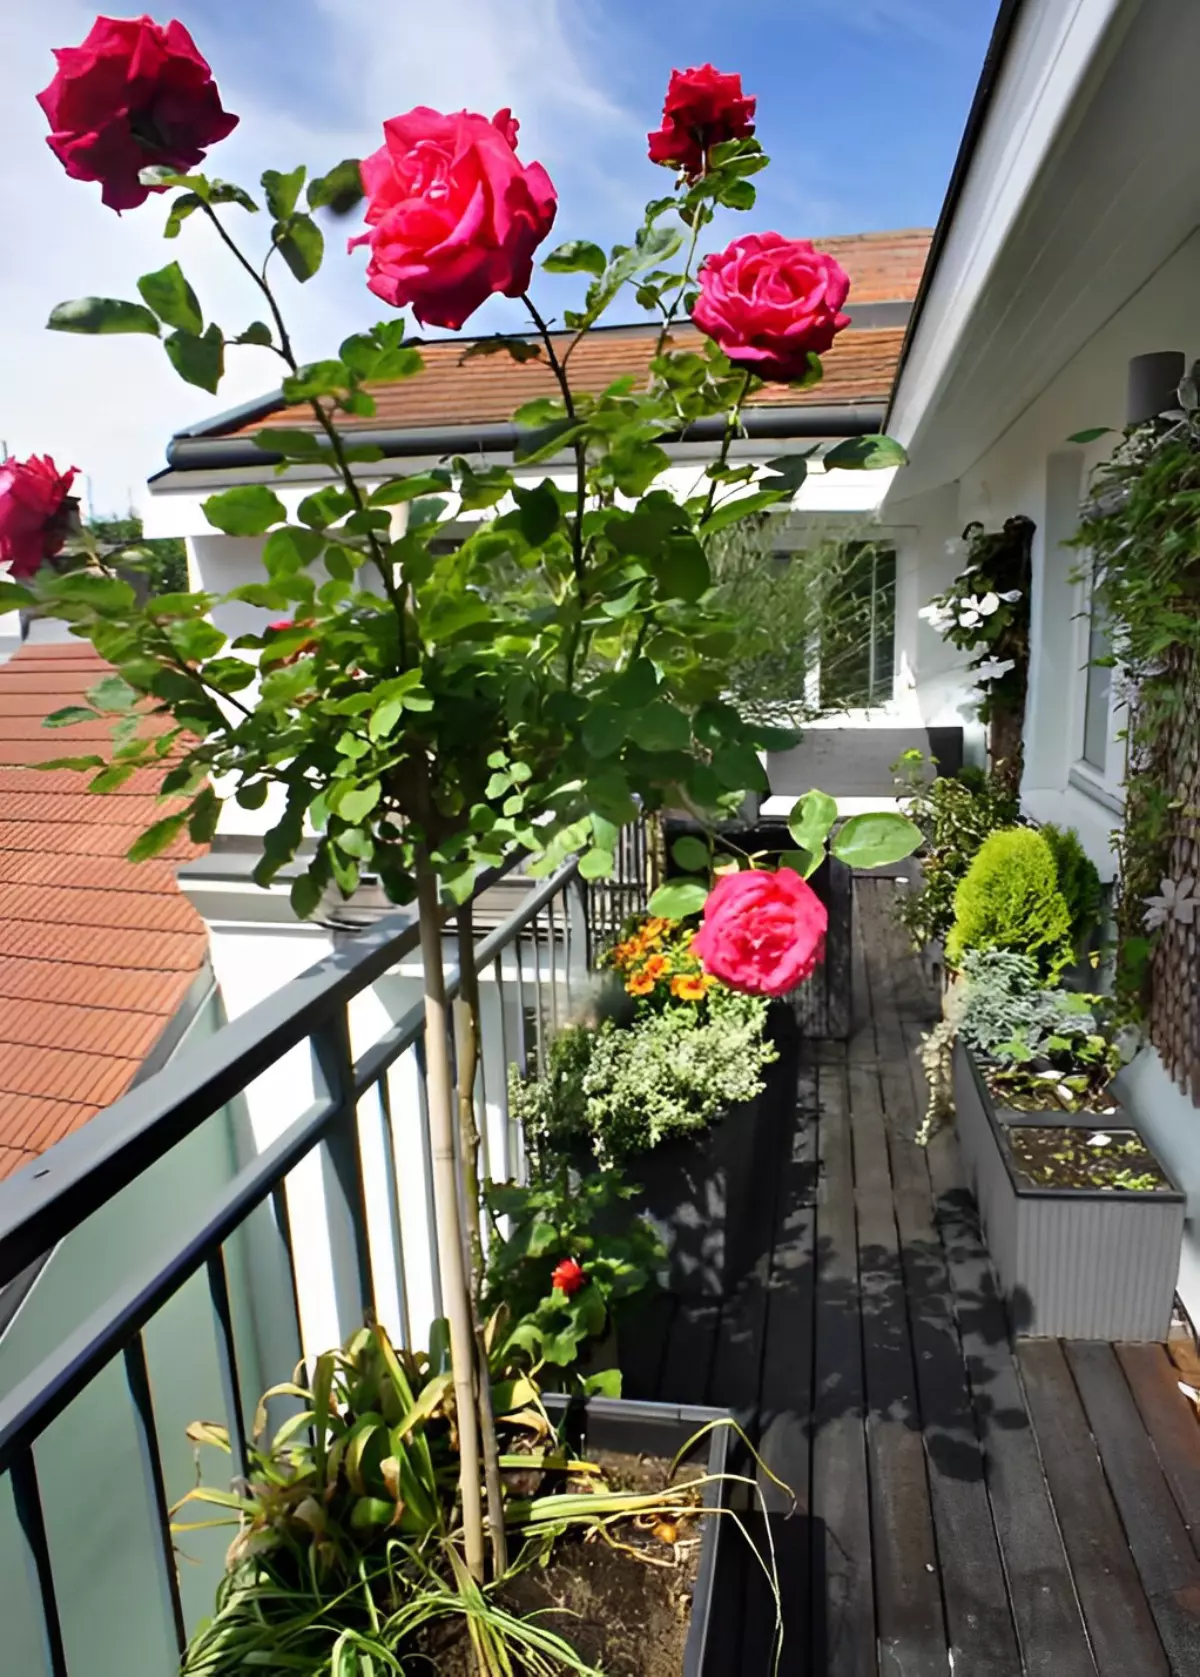 rosier rouge en pot sur un balcon tuteure avec une tige en bamboo